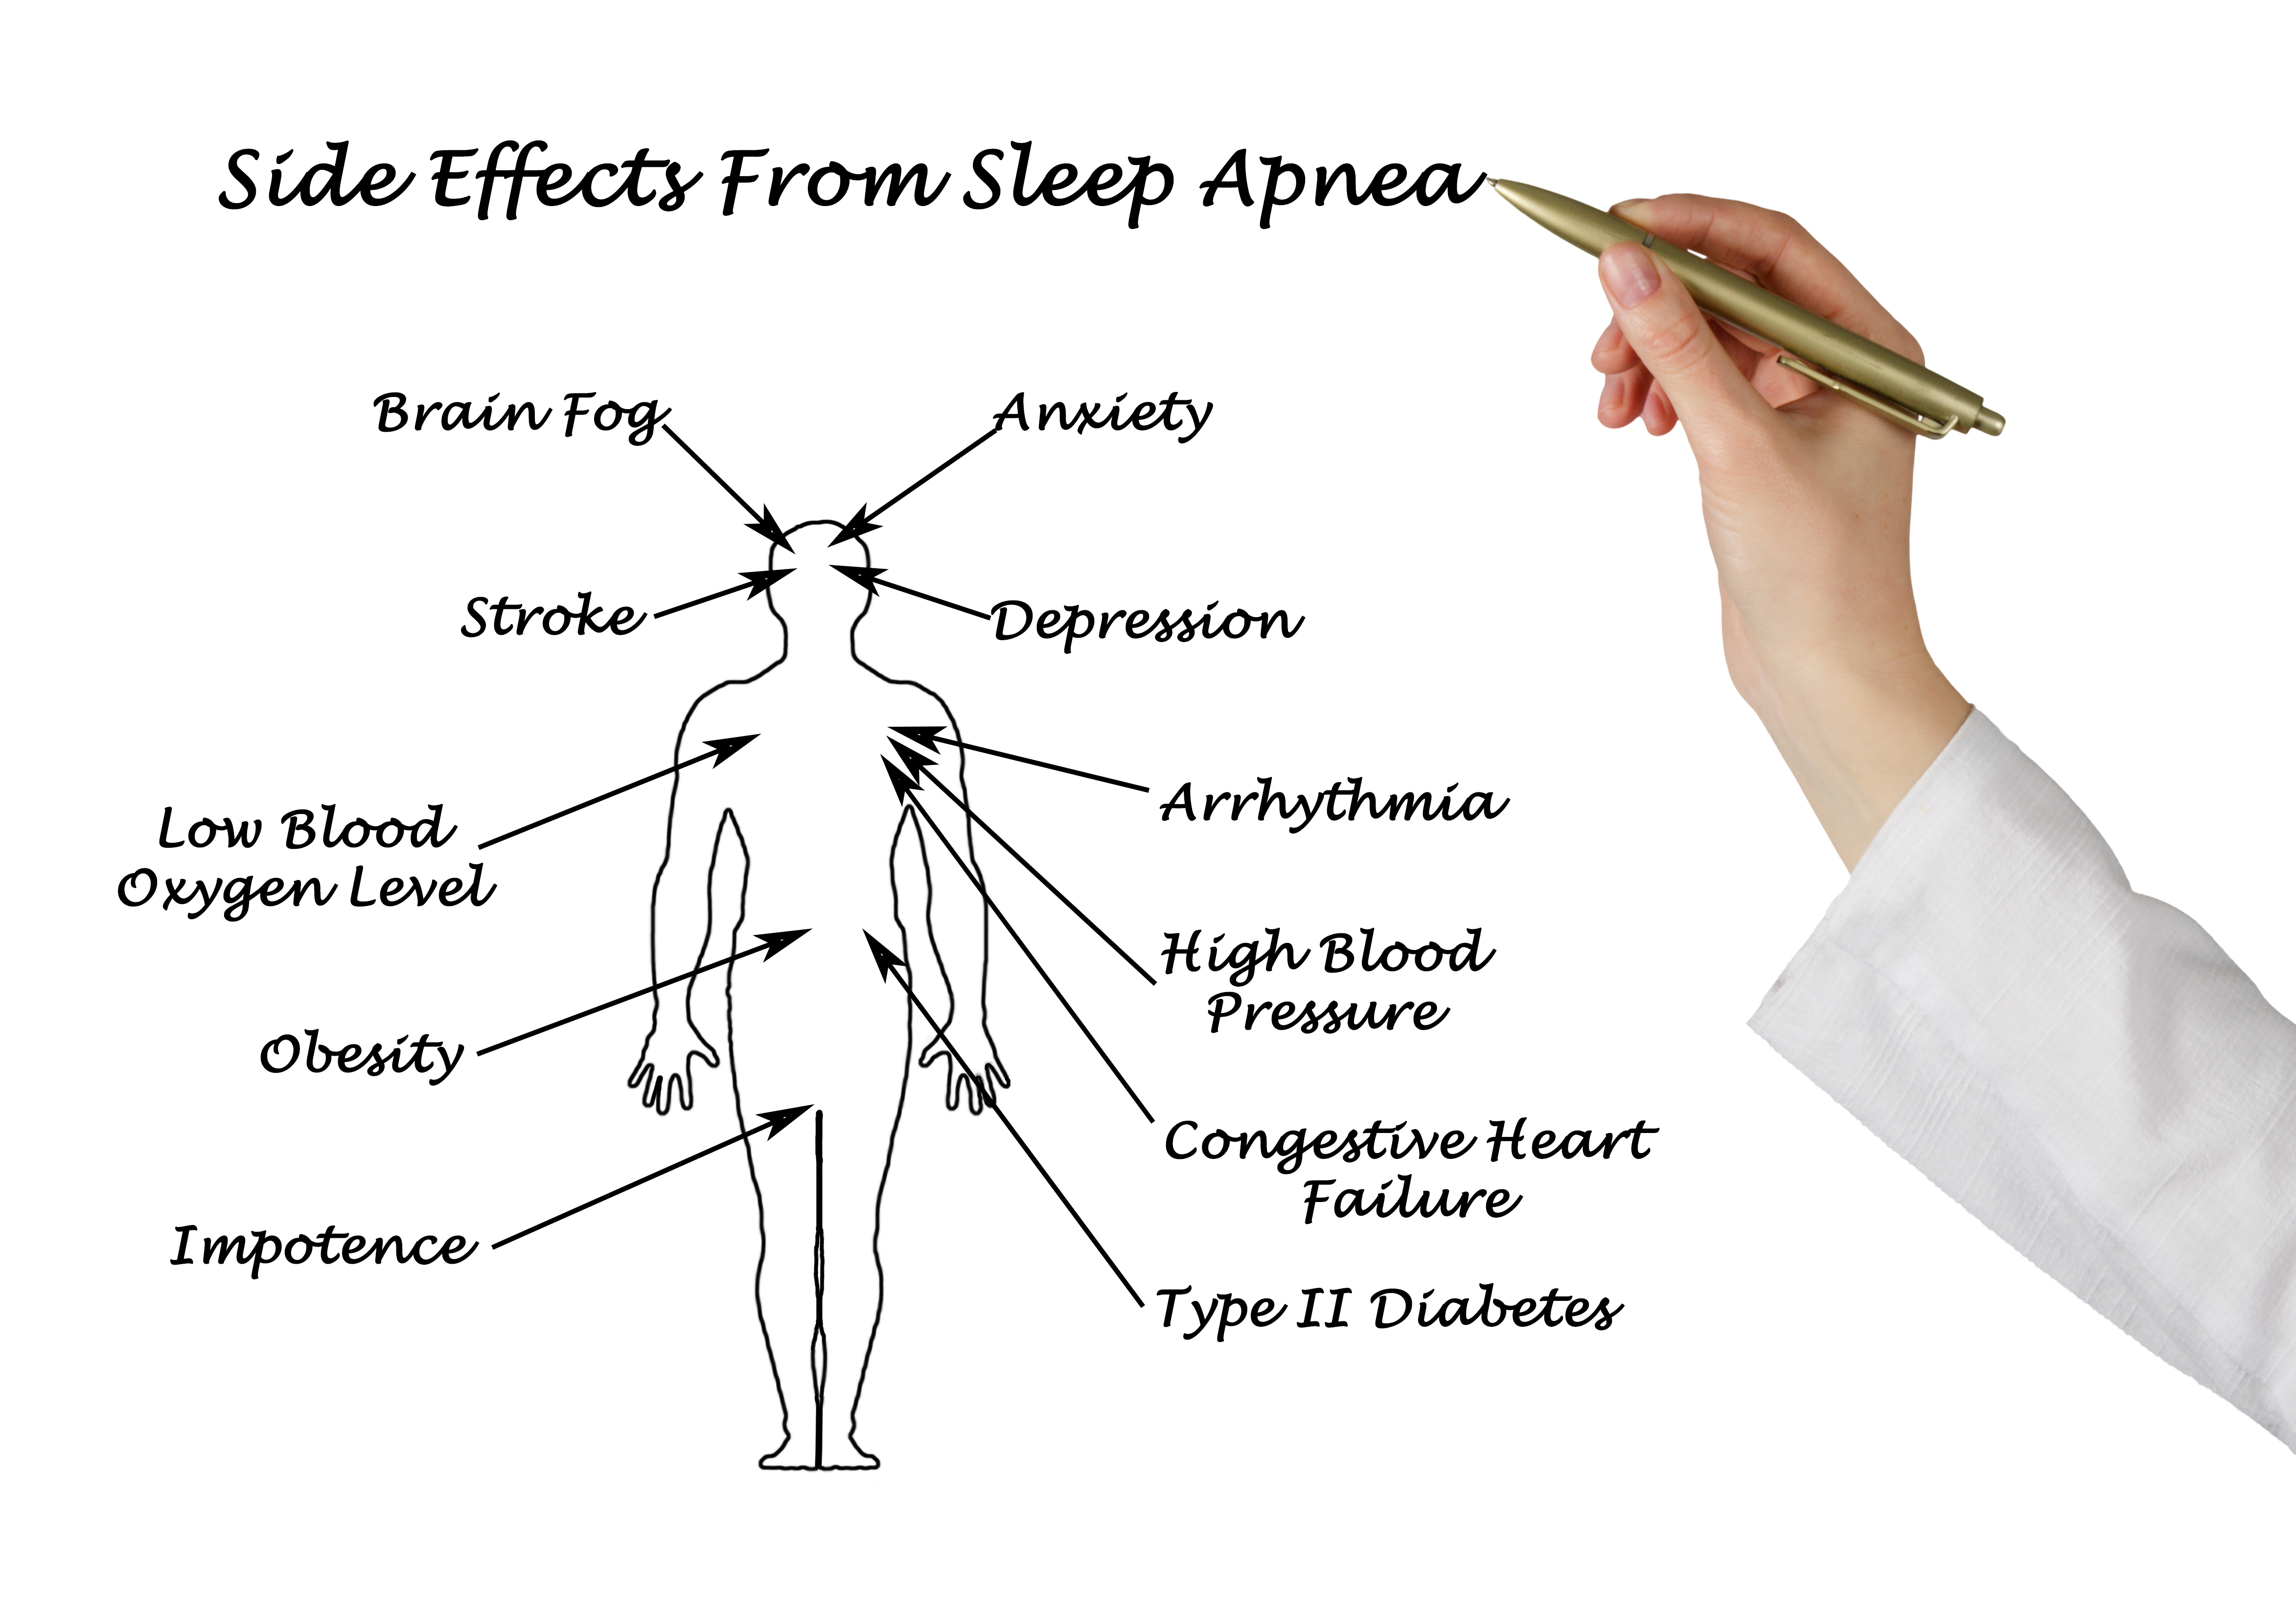 Sife Effects From Sleep Apnea
